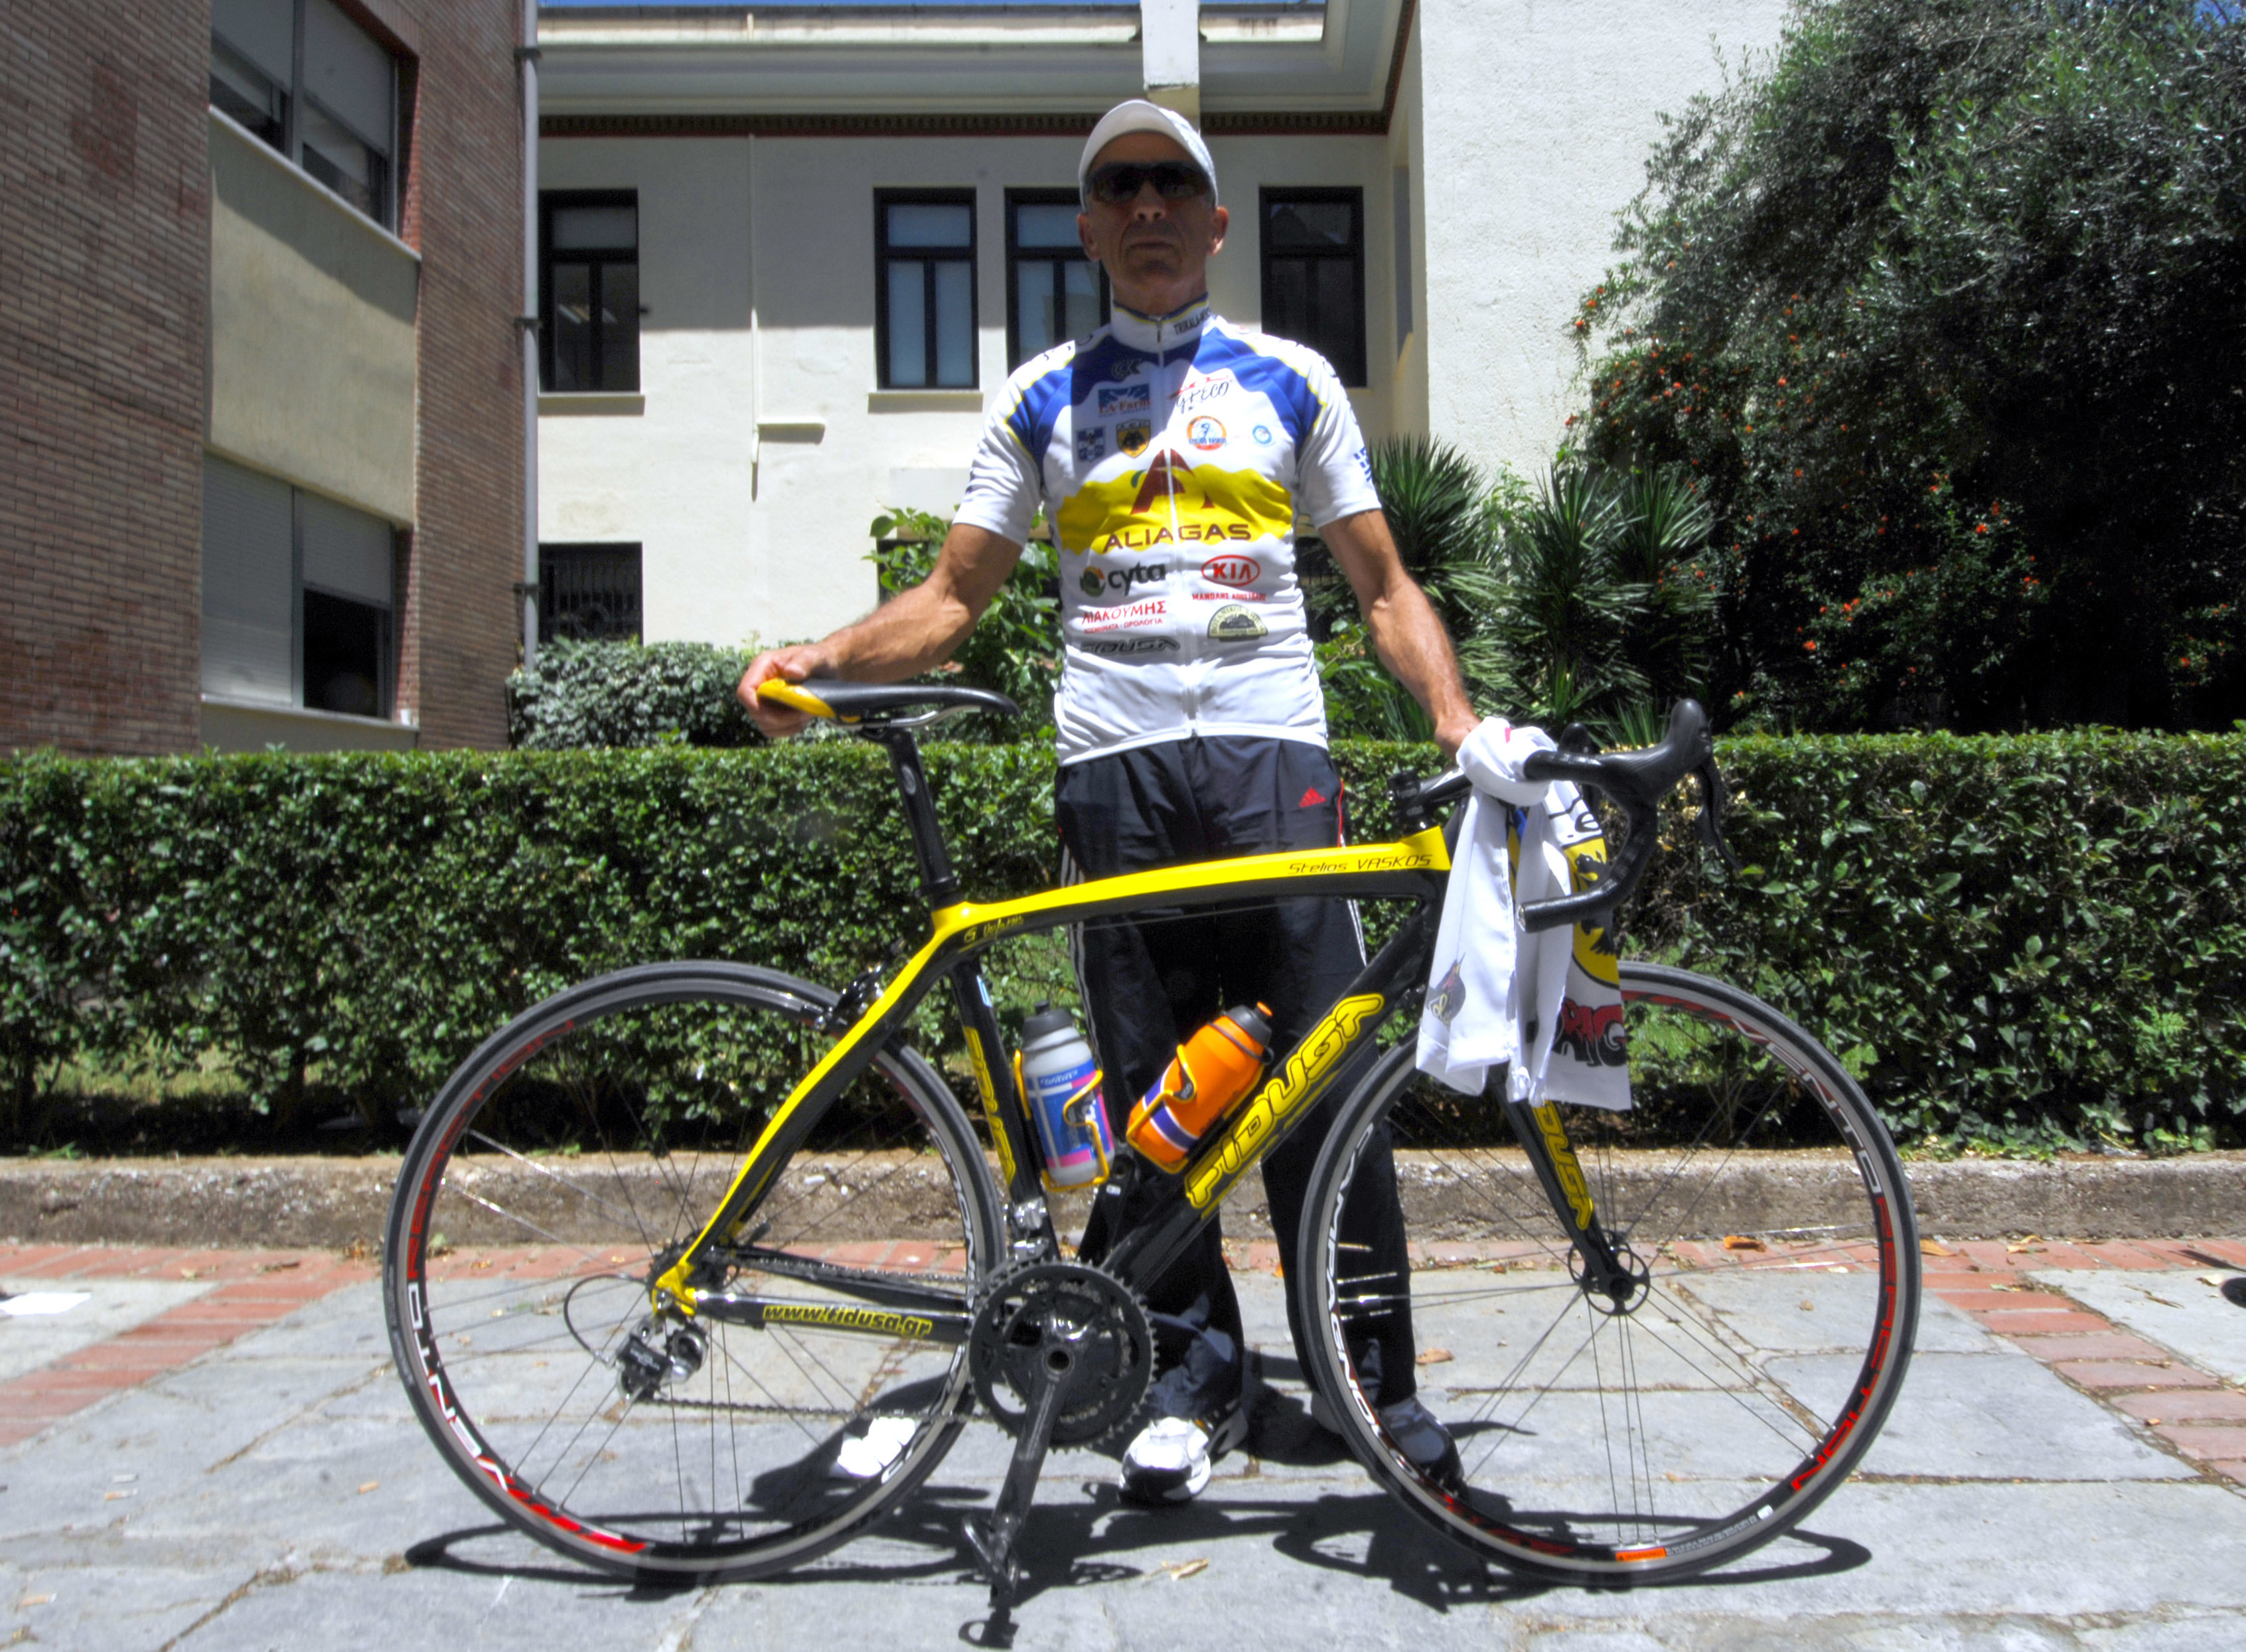 Τρίκαλα-Μόναχο-Τρίκαλα με το ποδήλατο πάει ο Σ. Βάσκος για το “χαμόγελο του παιδιού”